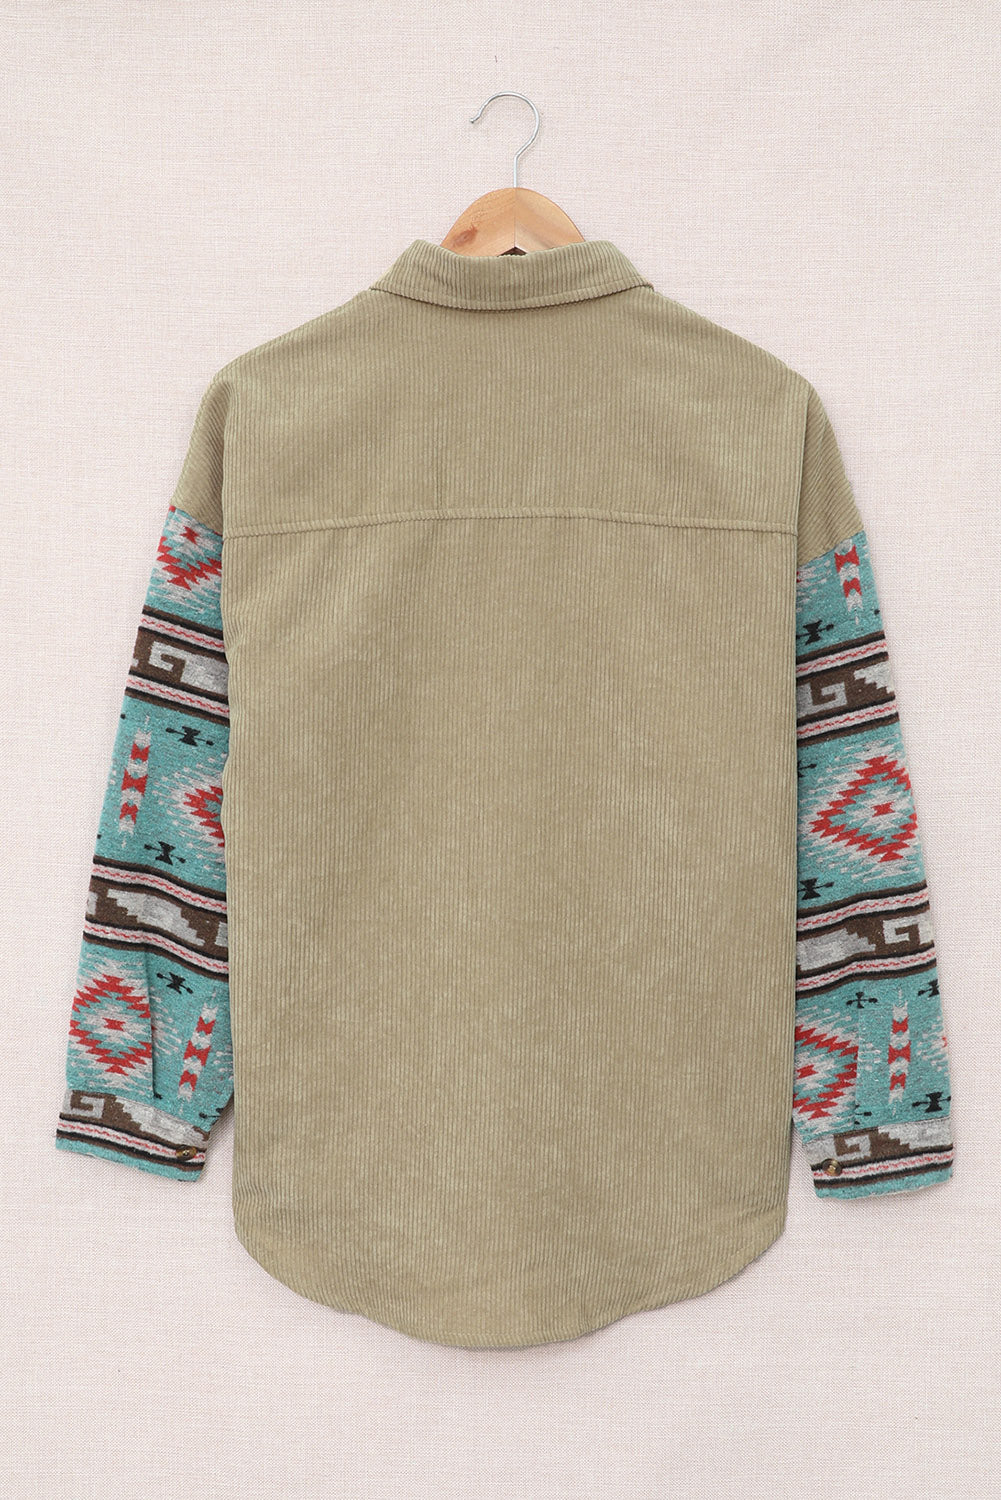 Khaki Aztec Pattern Sleeve Pocketed Corduroy Shacket - Dixie Hike & Style